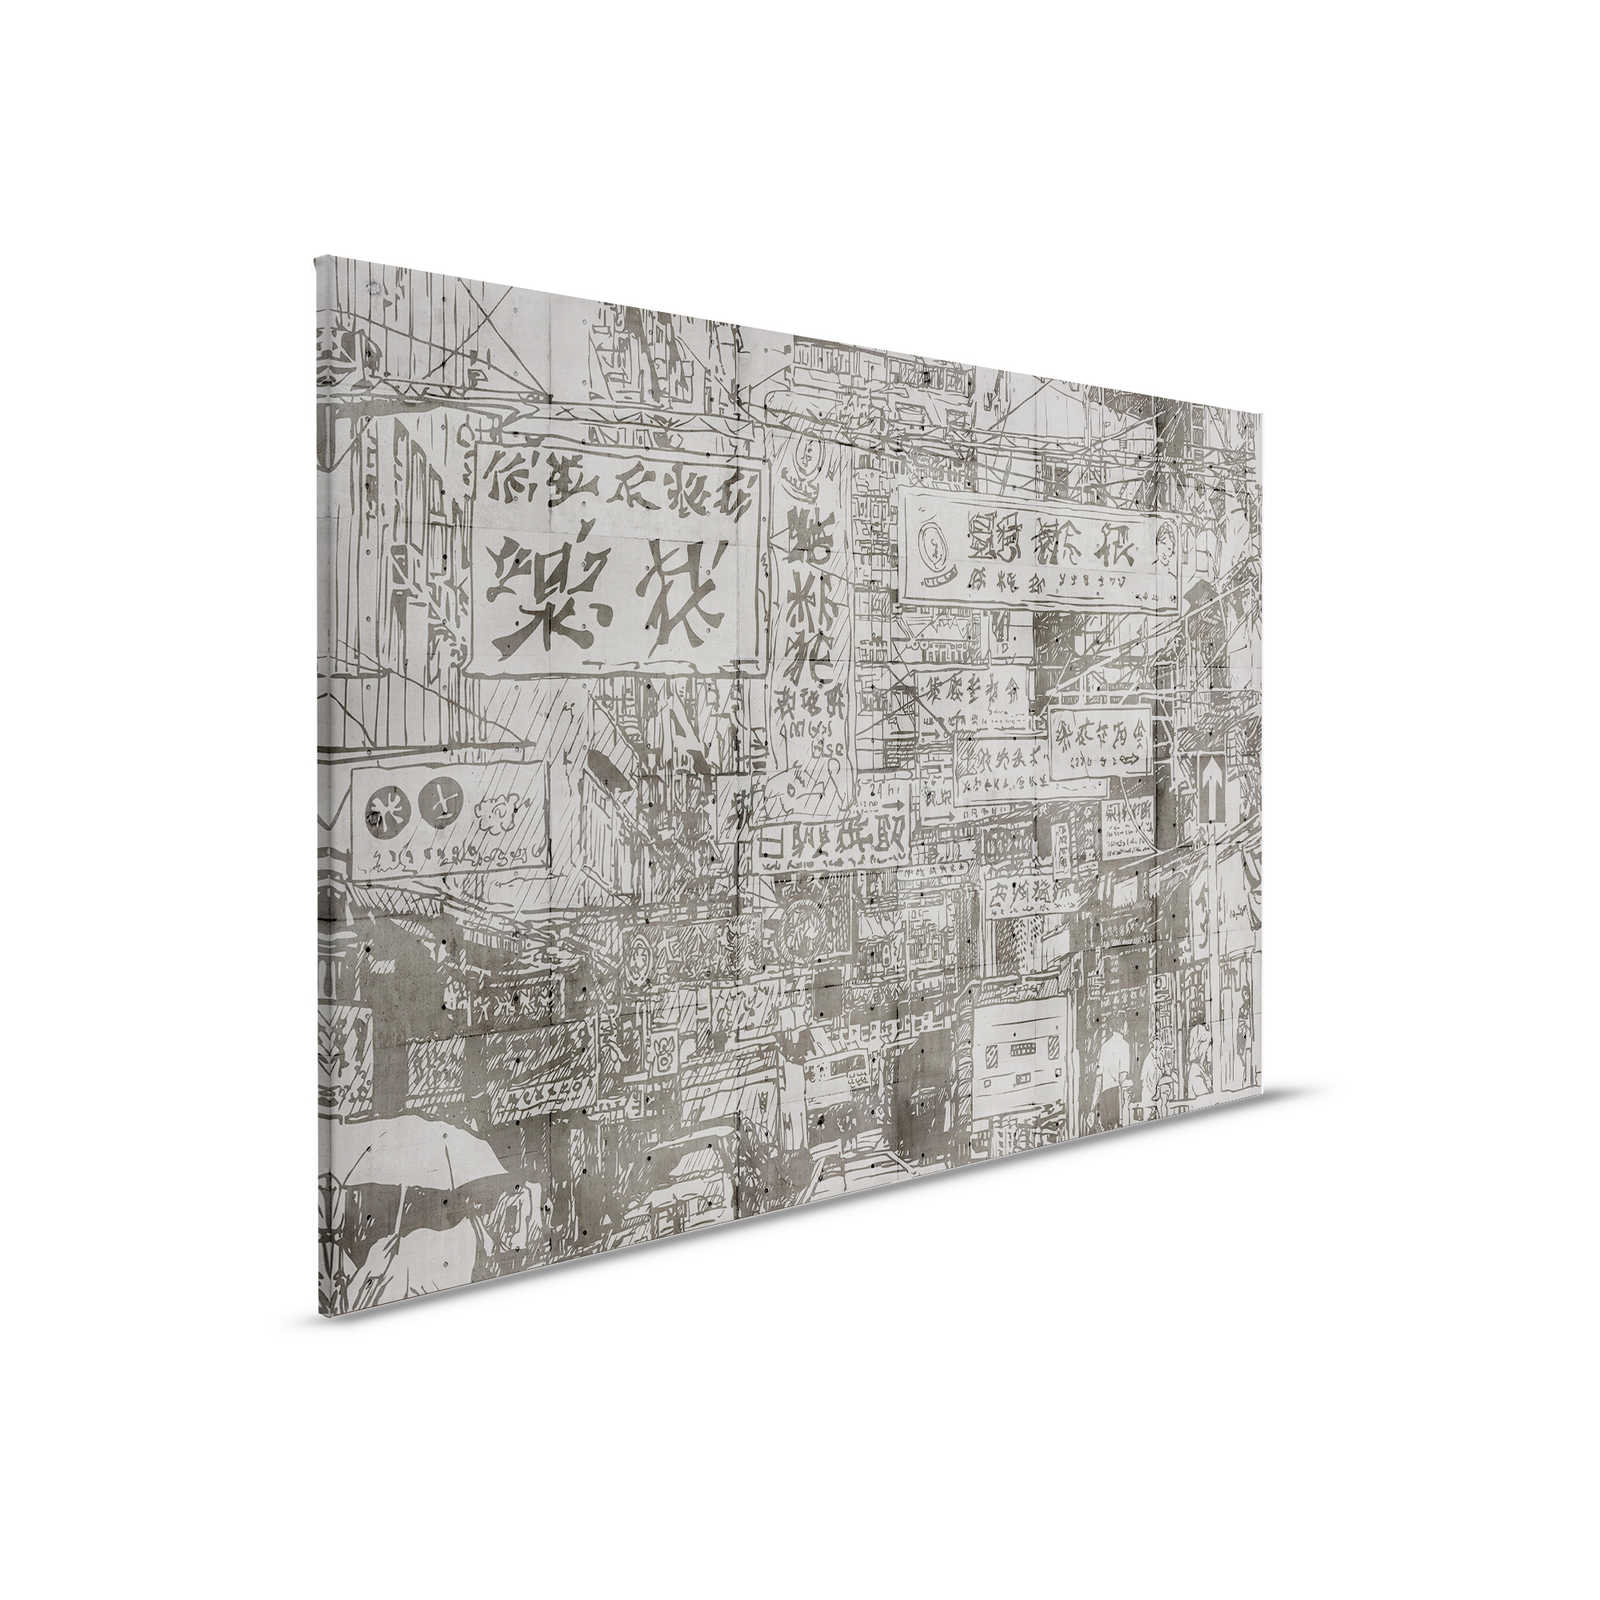 Downtown 1- Canvas schilderij met China look in betonnen structuur - 0,90 m x 0,60 m
